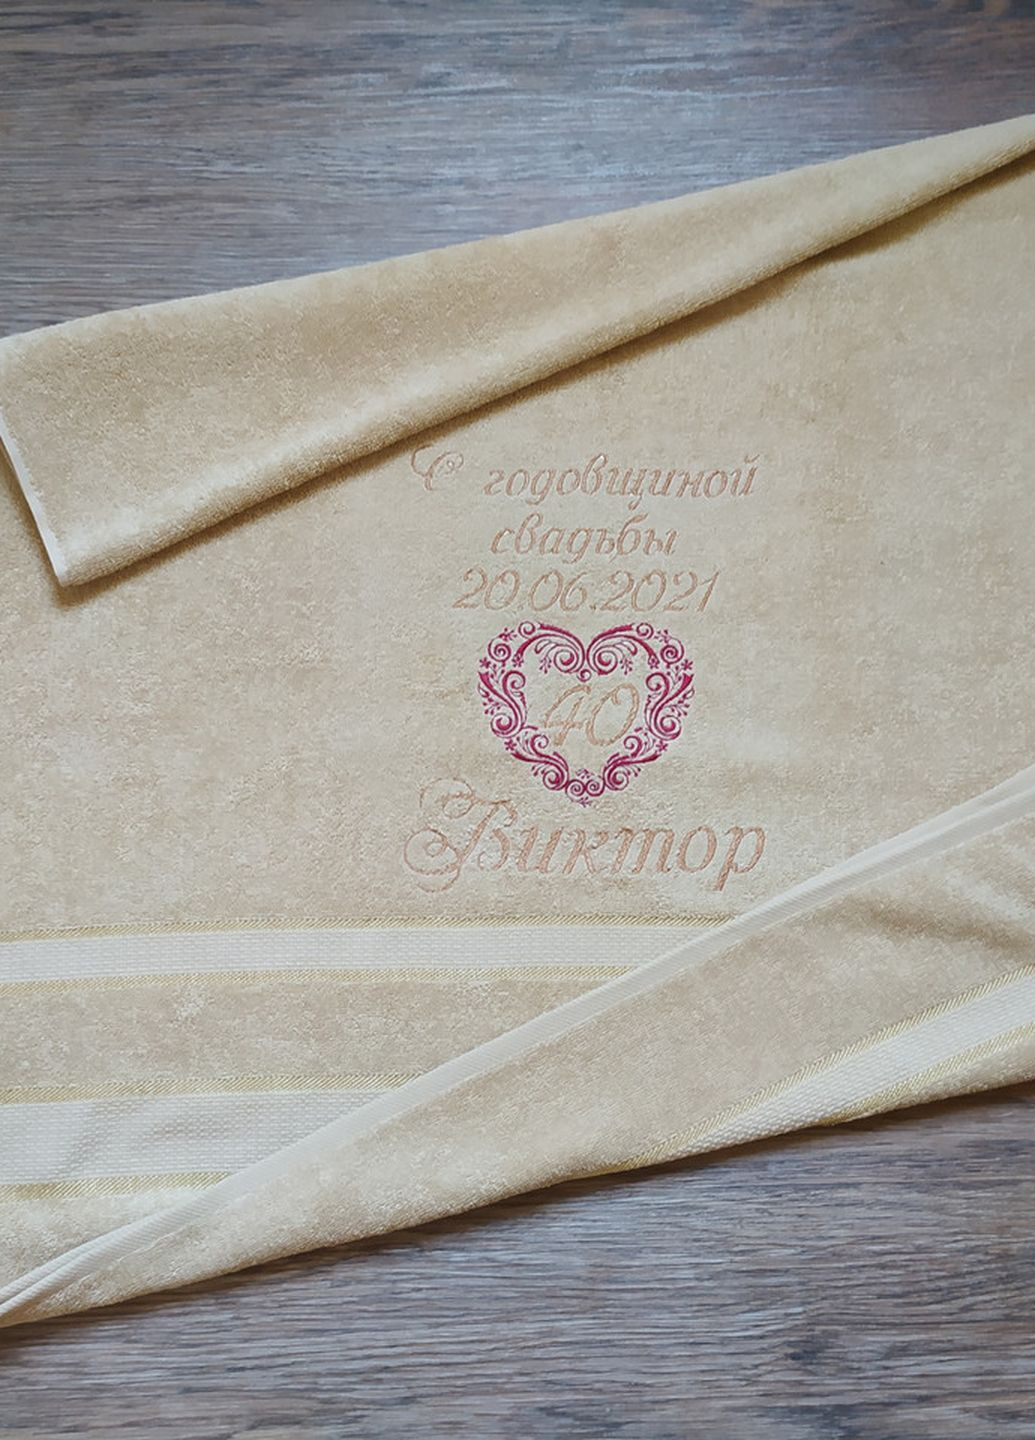 No Brand набор полотенец с махровое банное 70*140 бежевый именной вышивкой ольга викторна годовщину свадьбы (00158) однотонный бежевый производство - Украина